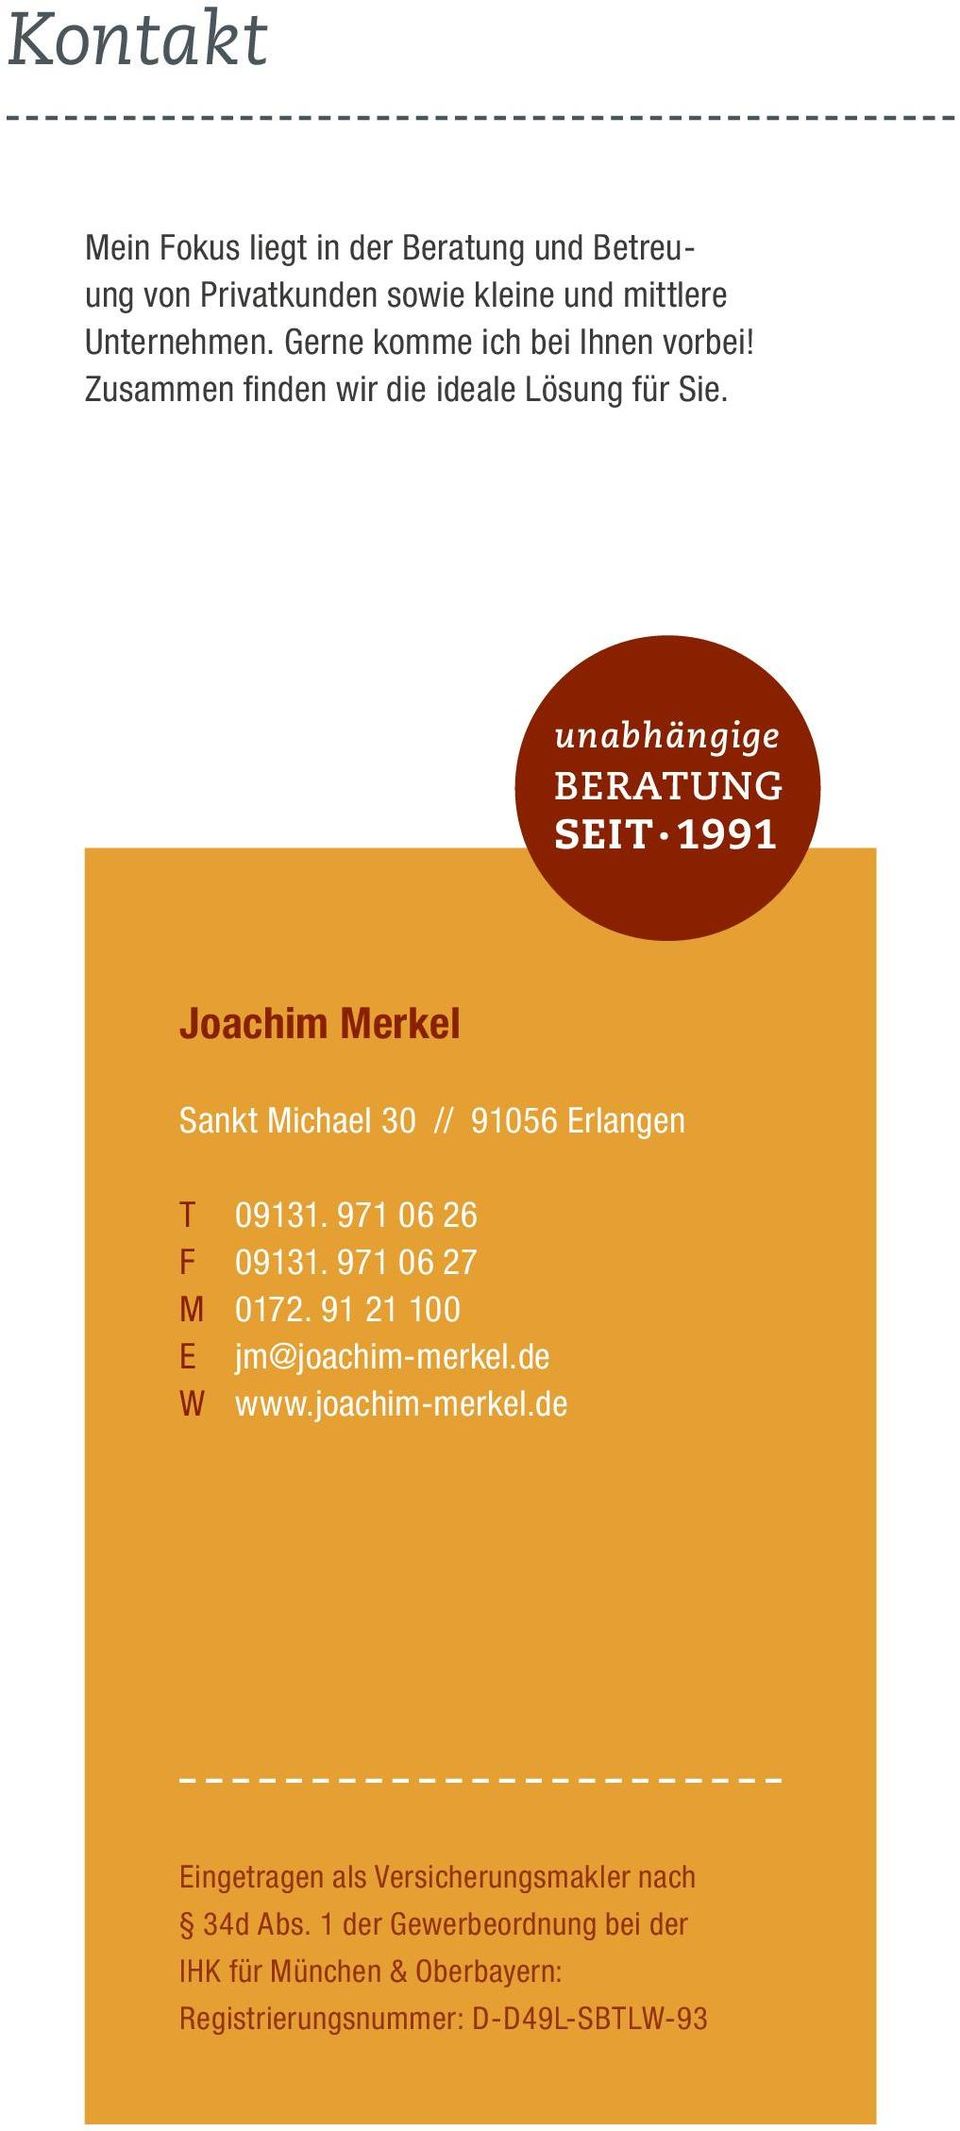 1991 Joachim Merkel Sankt Michael 30 // 91056 Erlangen T 09131. 971 06 26 F 09131. 971 06 27 M 0172. 91 21 100 E jm@joachim-merkel.